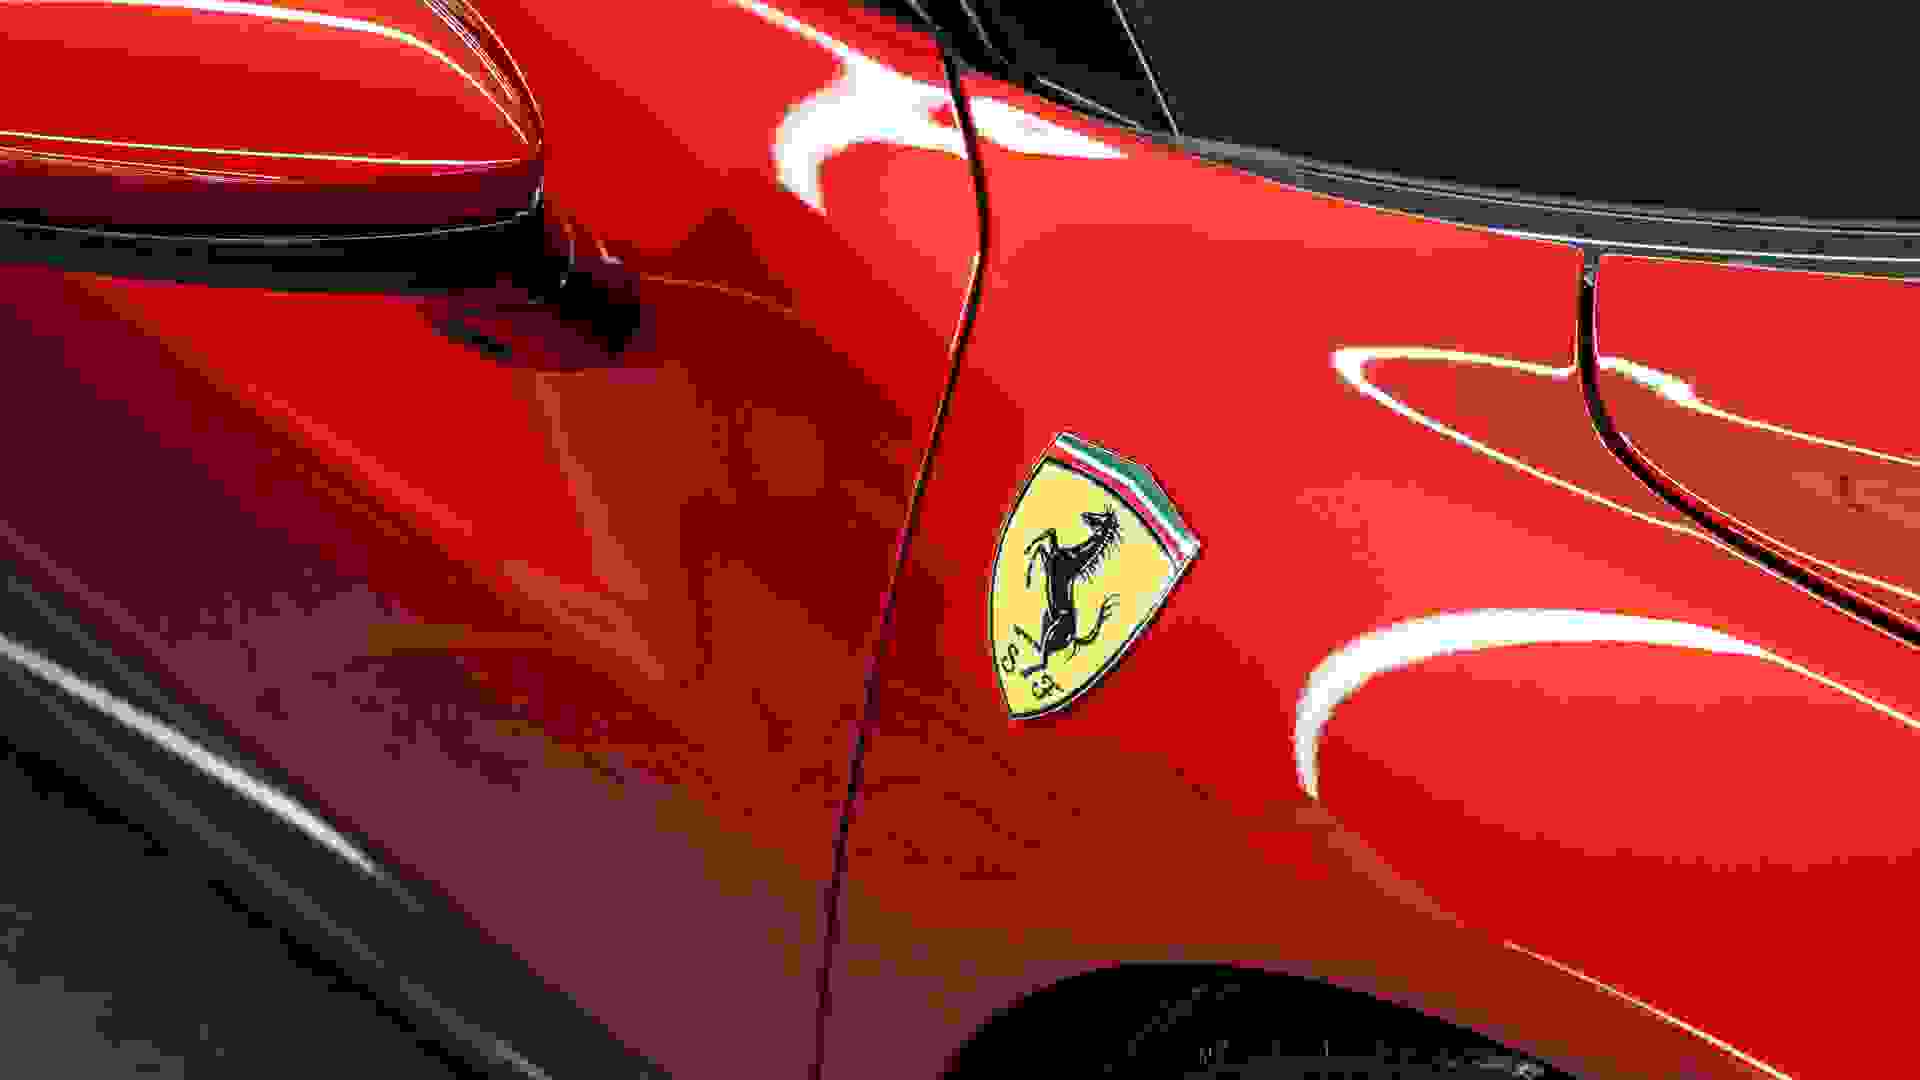 Ferrari 296 Photo 9ecd561e-81af-4766-98fa-f1e93afa5002.jpg